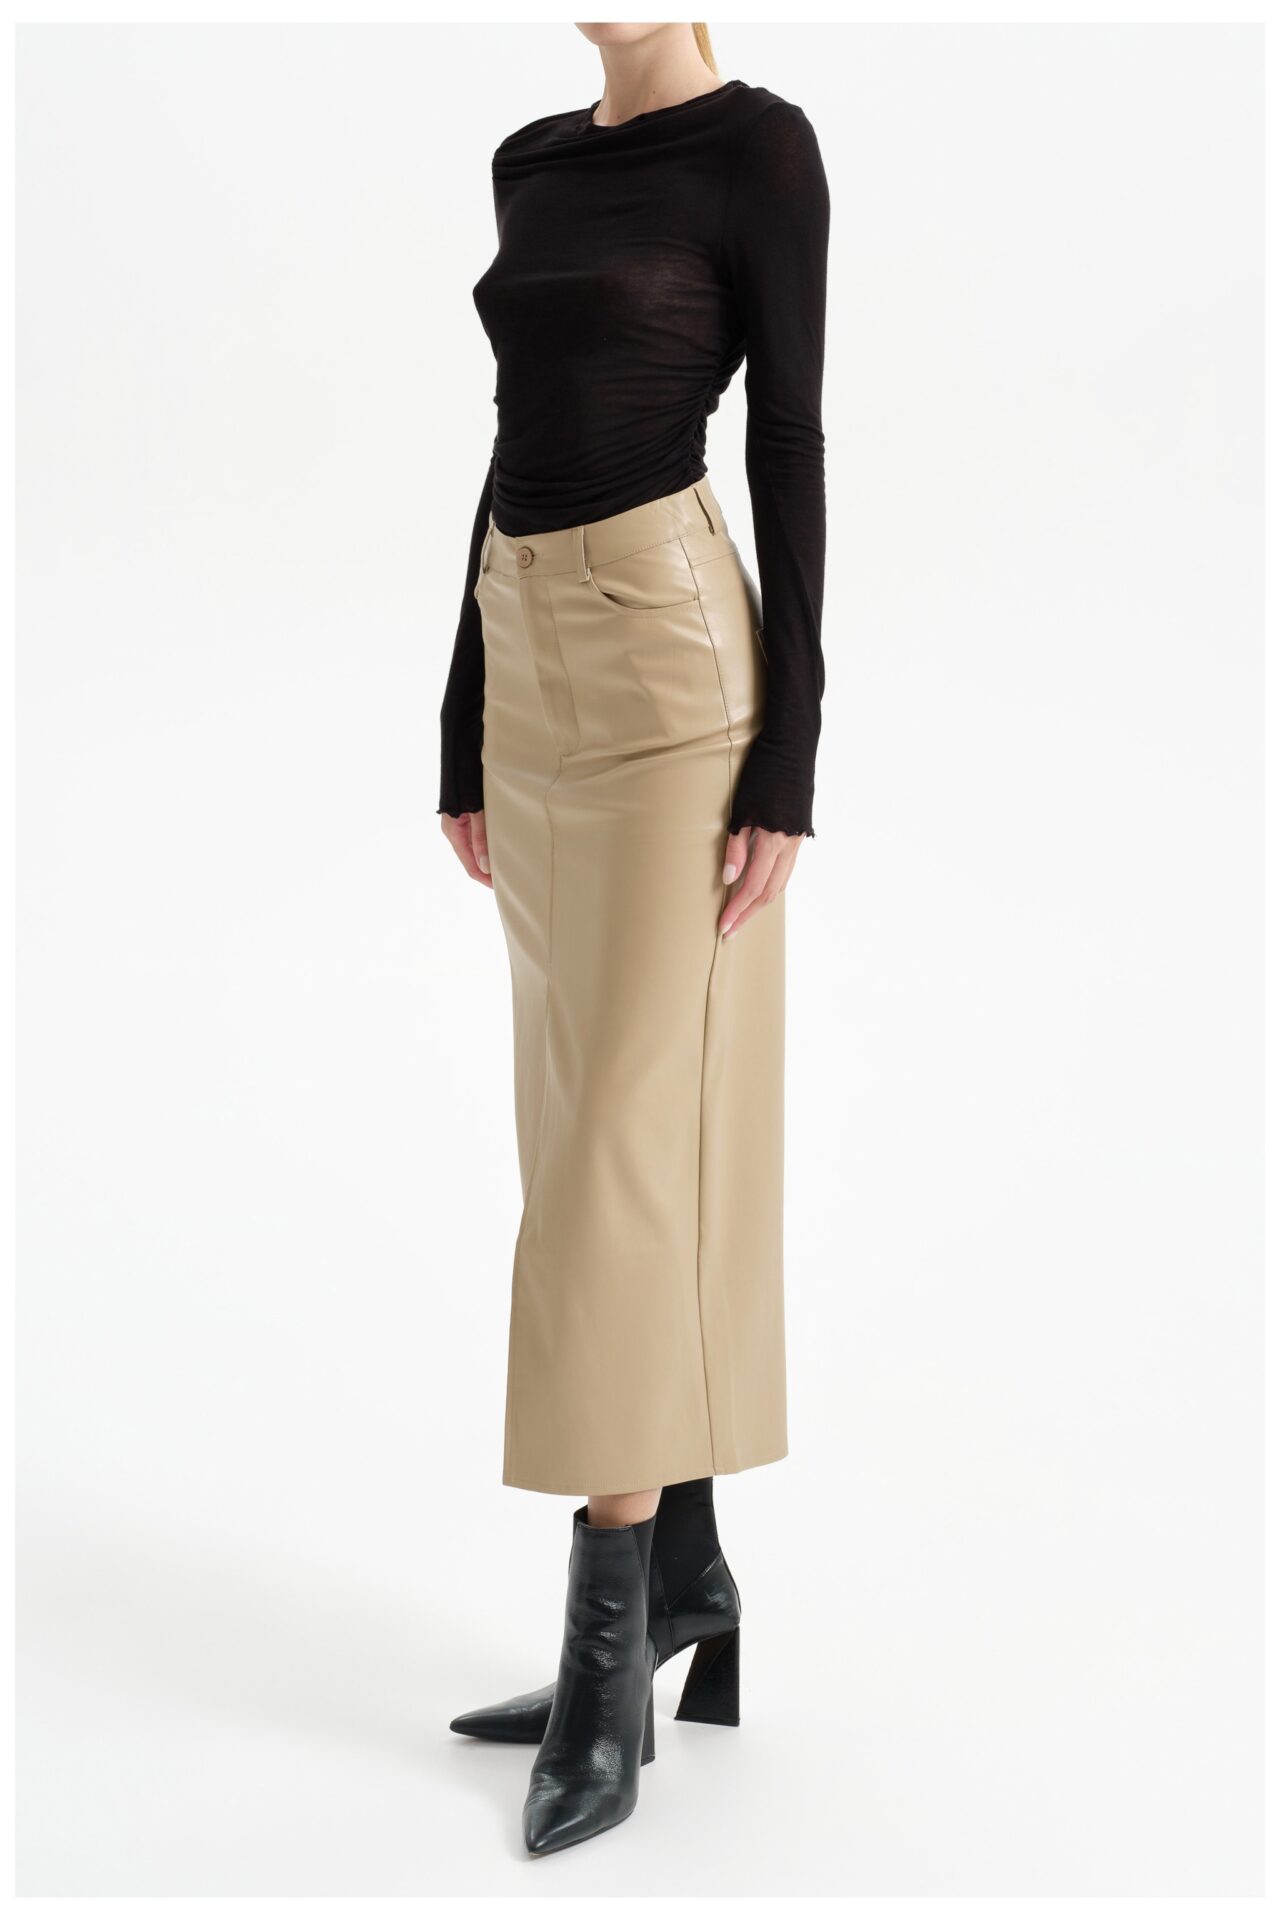 long-skirt-art-lc23141-5